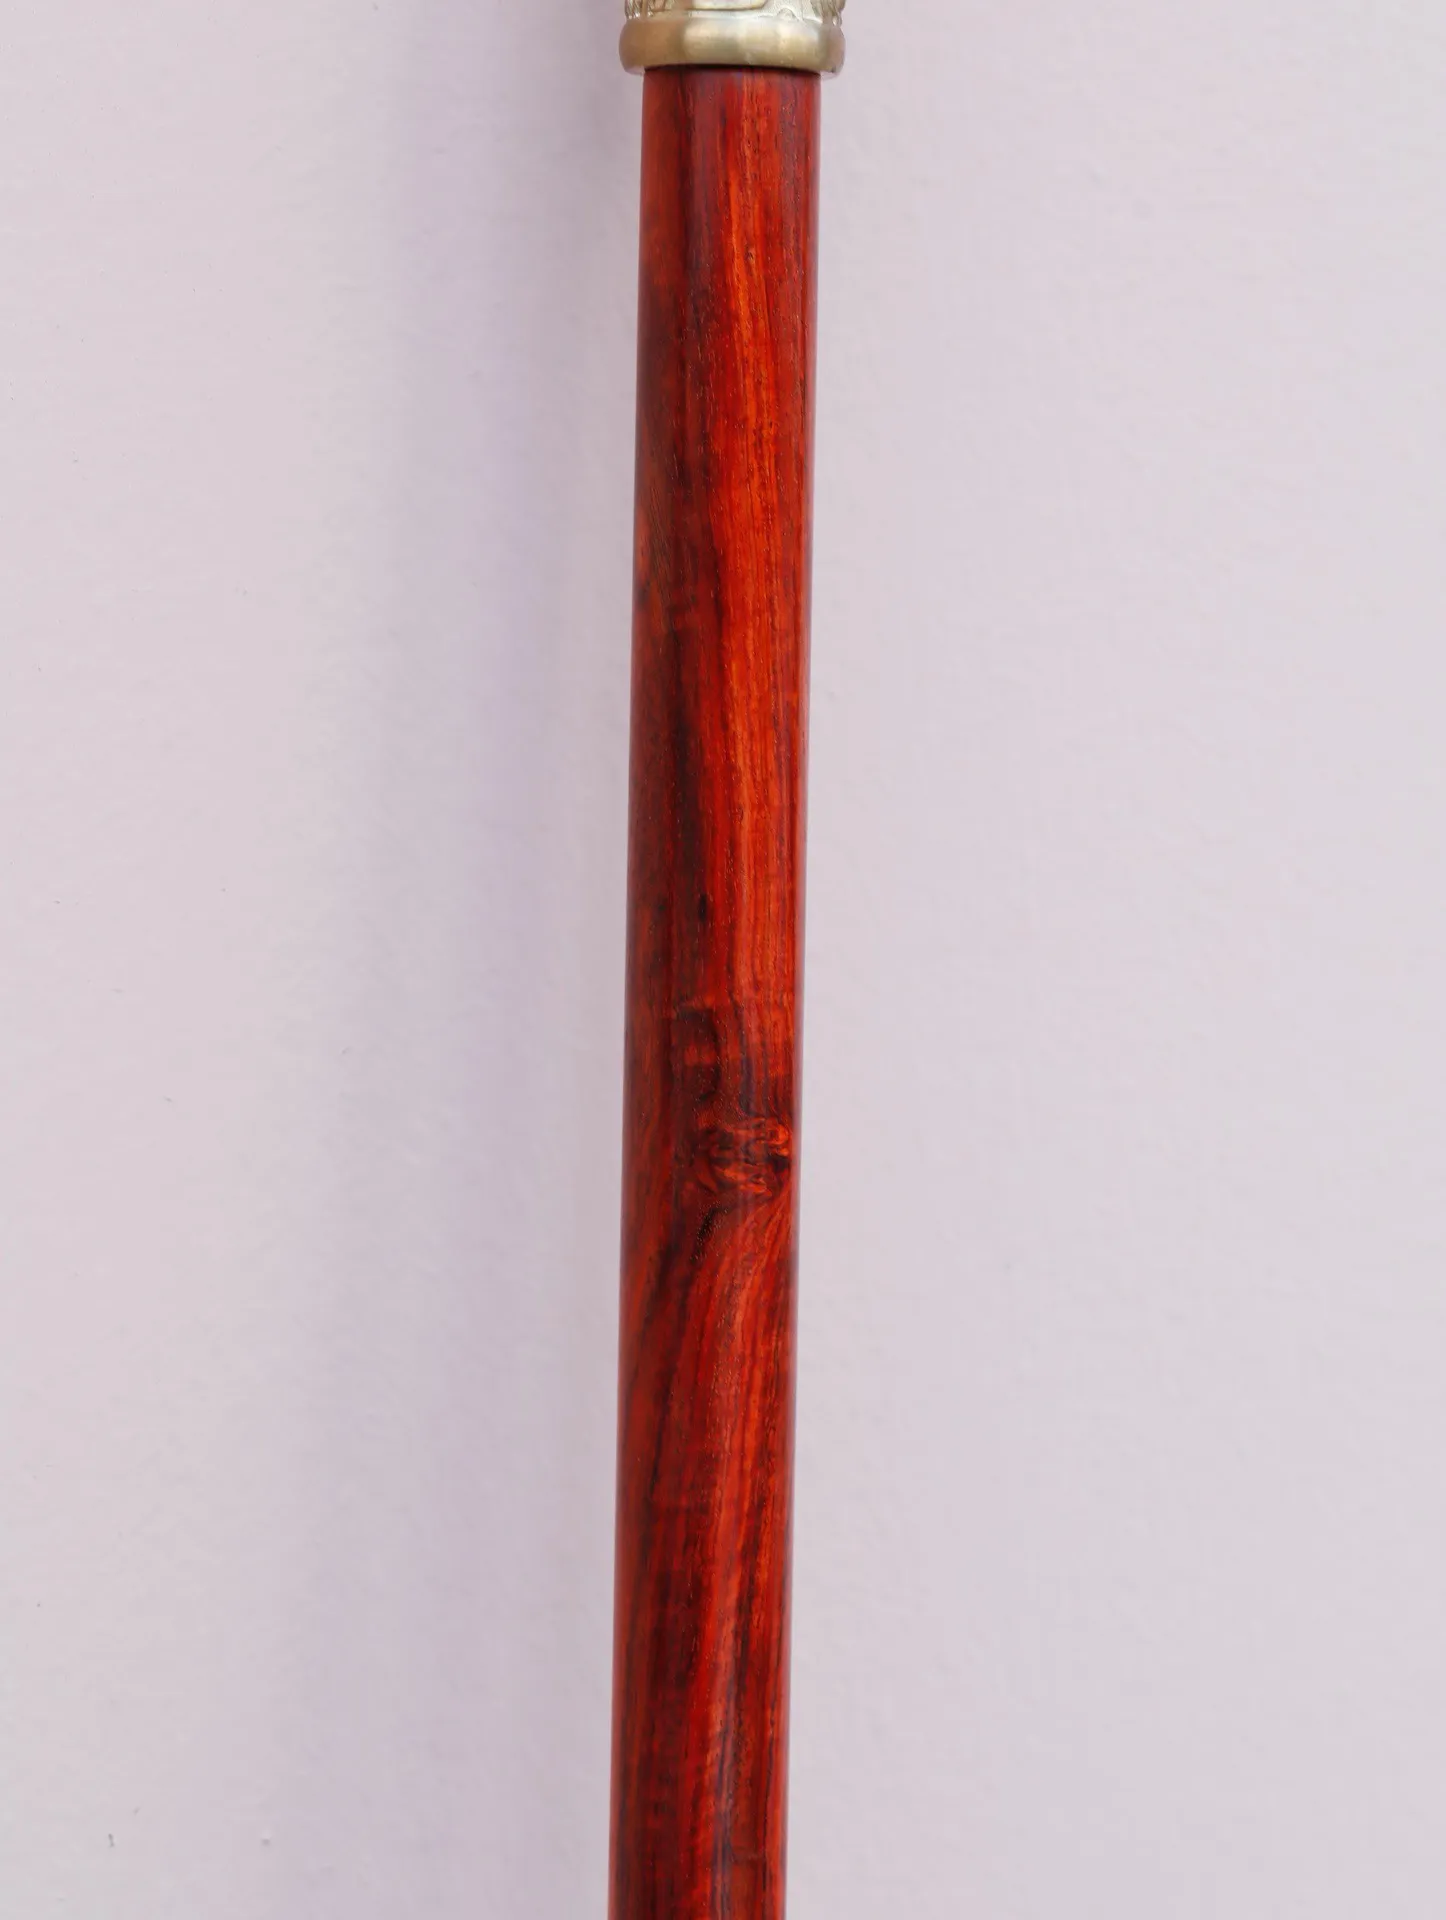 紫檀黄铜·如意金箍棒

规格:120*3*3cm ，重4.3斤